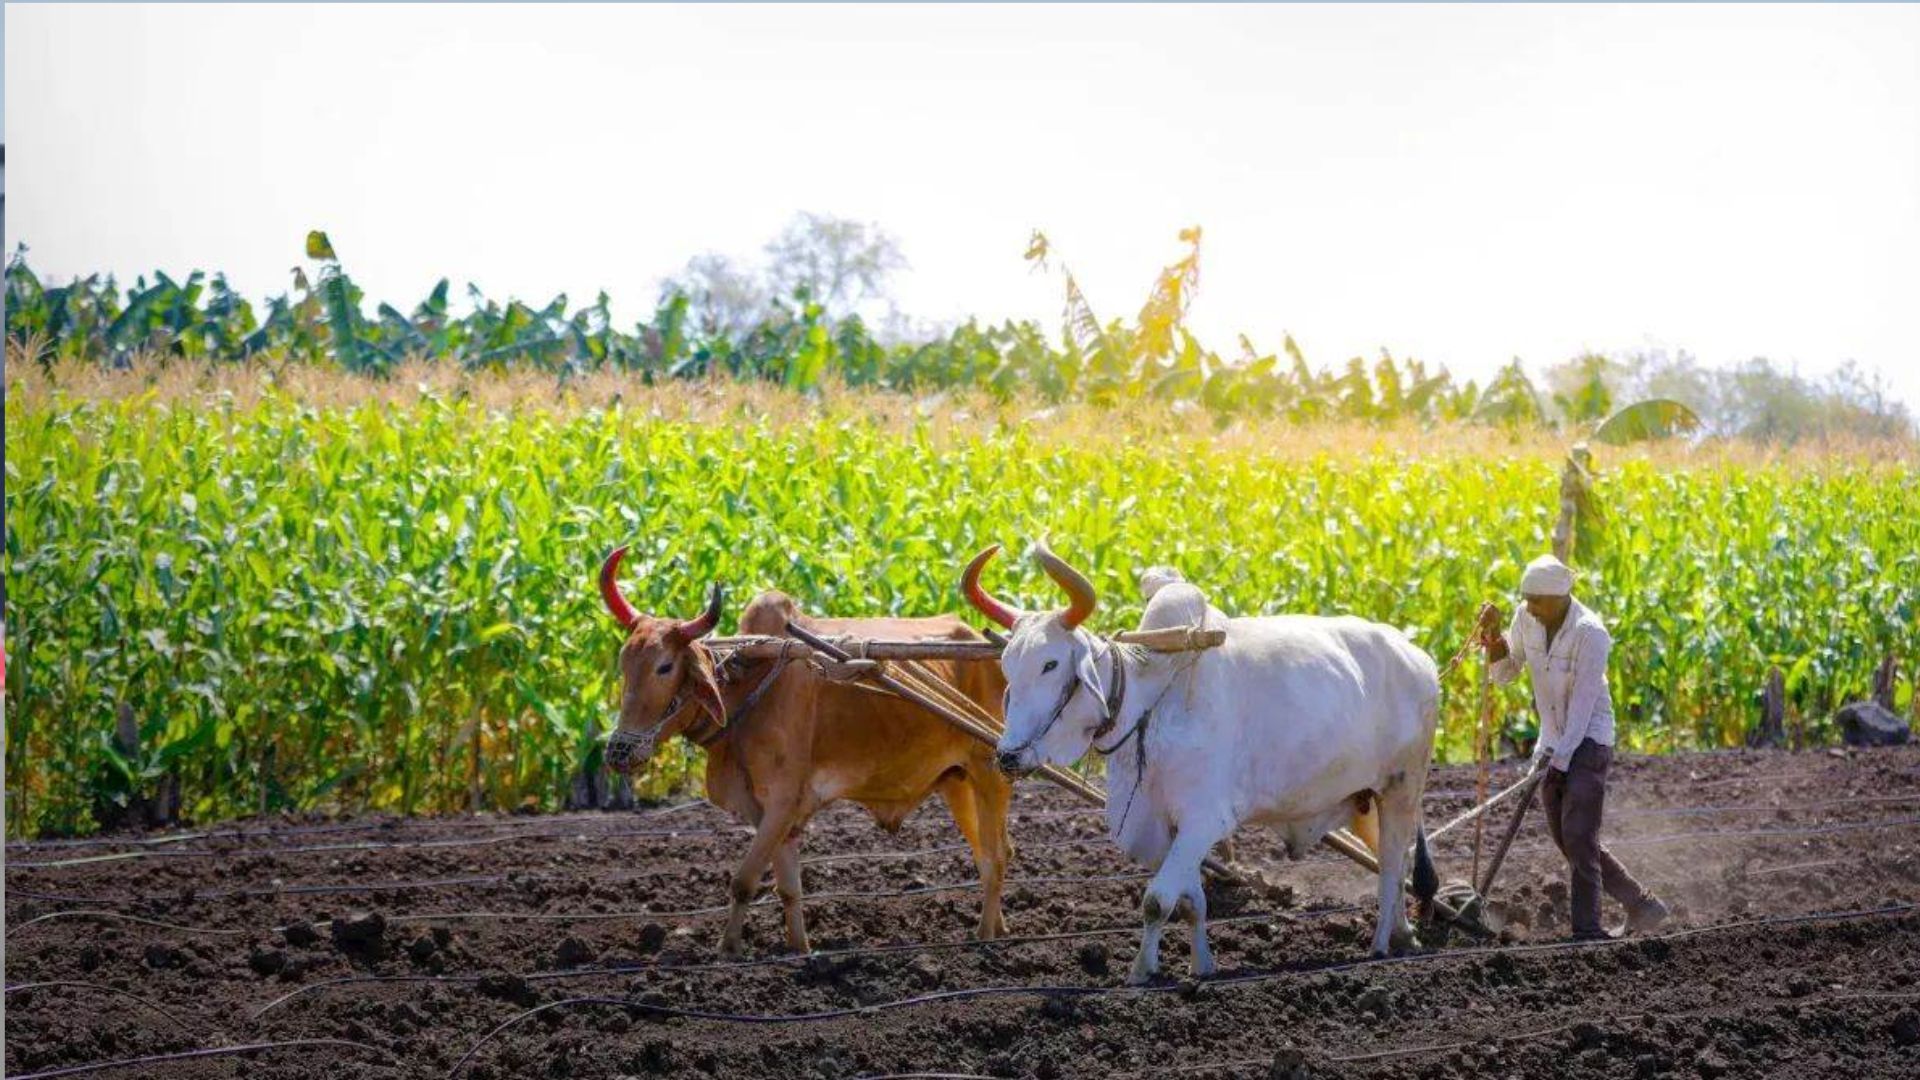 बरेली: बिथरी और भुता ब्लाक में 2.42 करोड़ से बनेंगे किसान कल्याण केंद्र